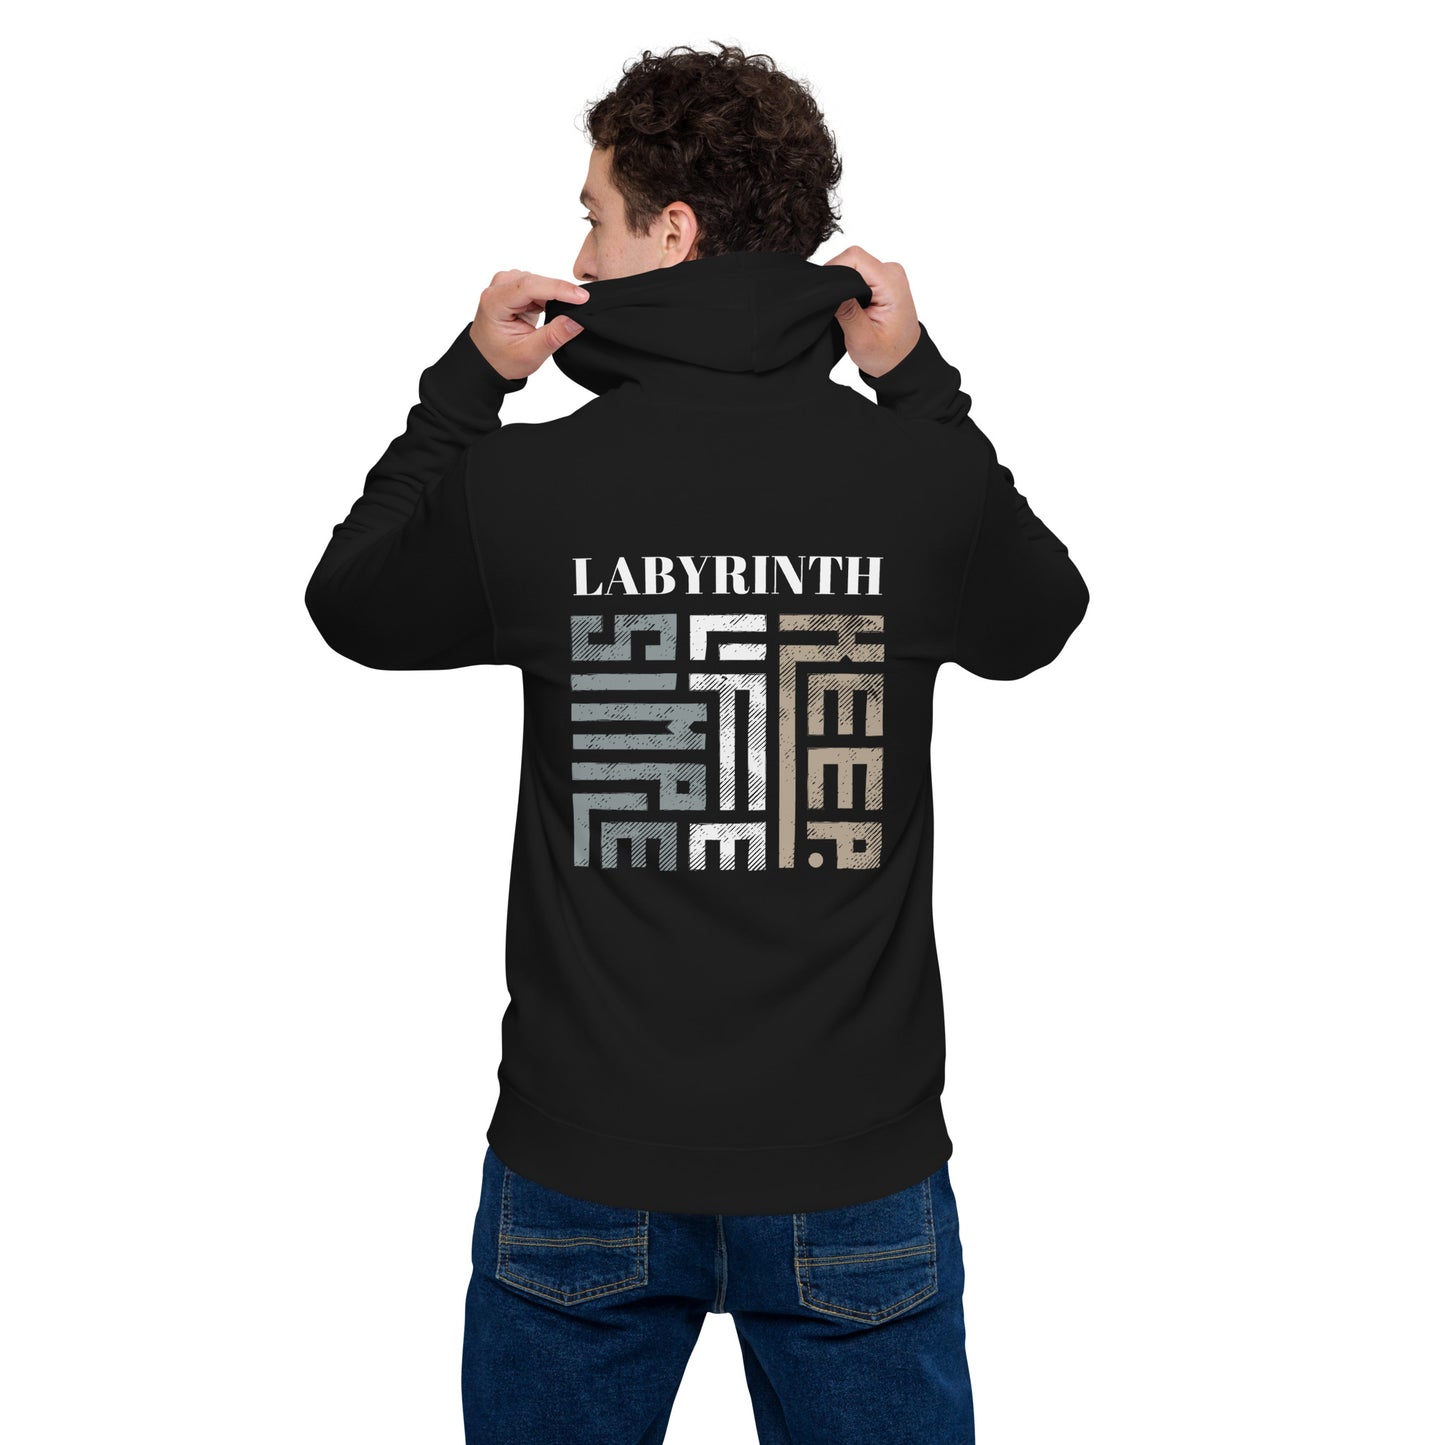 Labyrinth Keep Life Simple Unisex basic zip hoodie